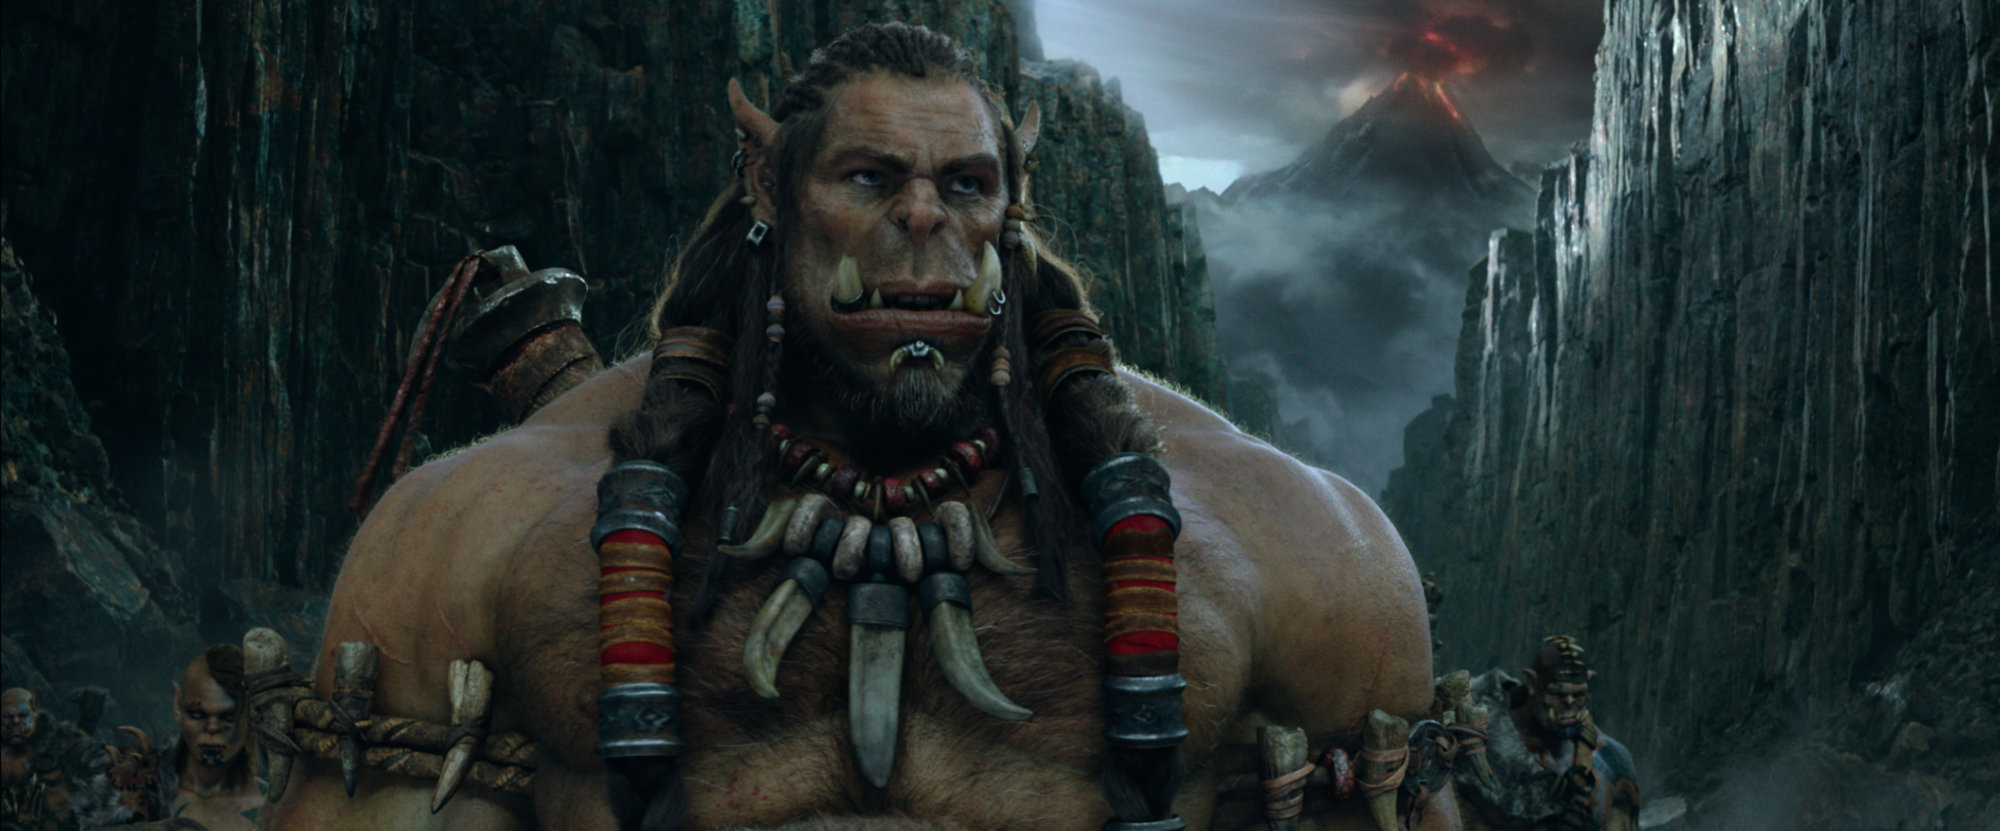 Predstavljamo titlovani kino trailer za "Warcraft: Početak"